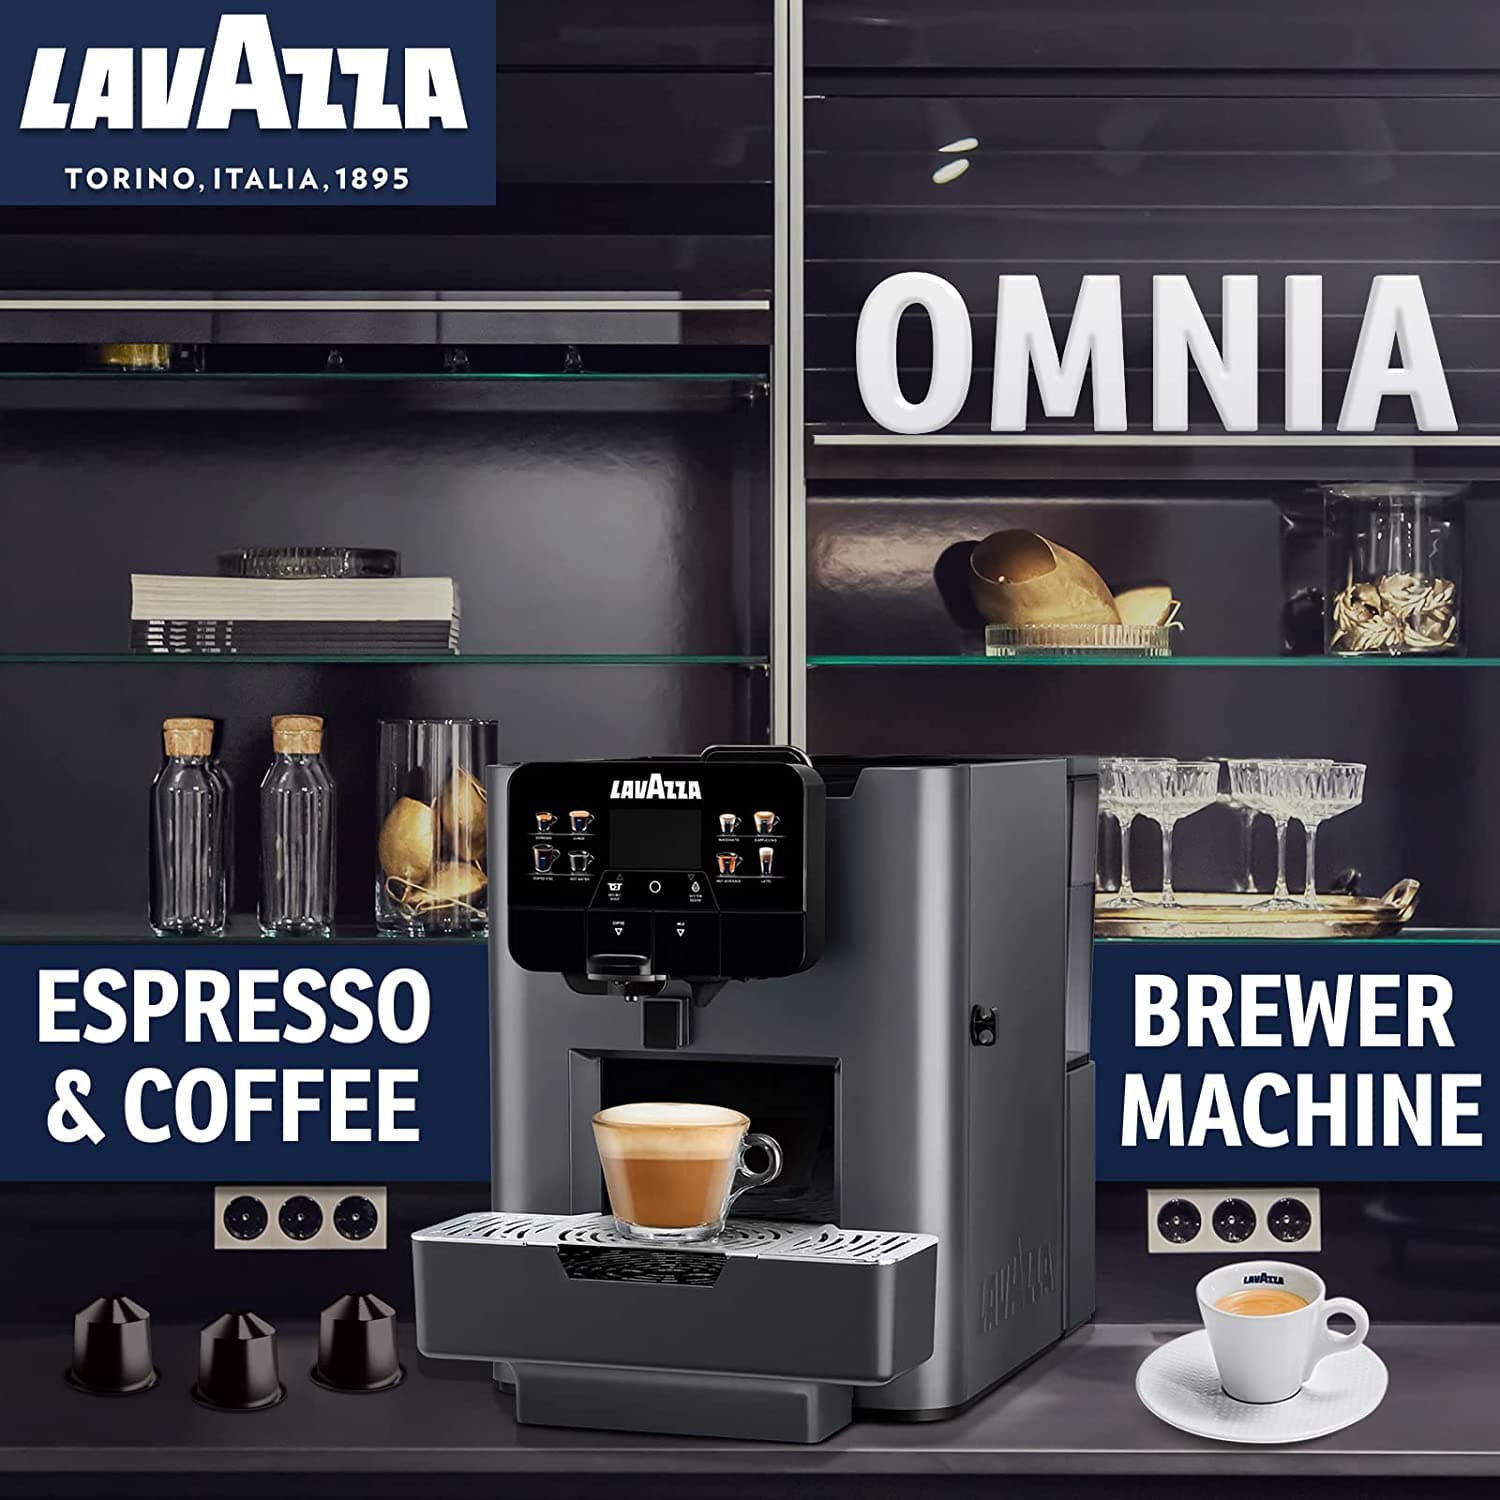 LAVAZZA Omnia Coffee Maker Blue Capsules 100-Pack Top Class